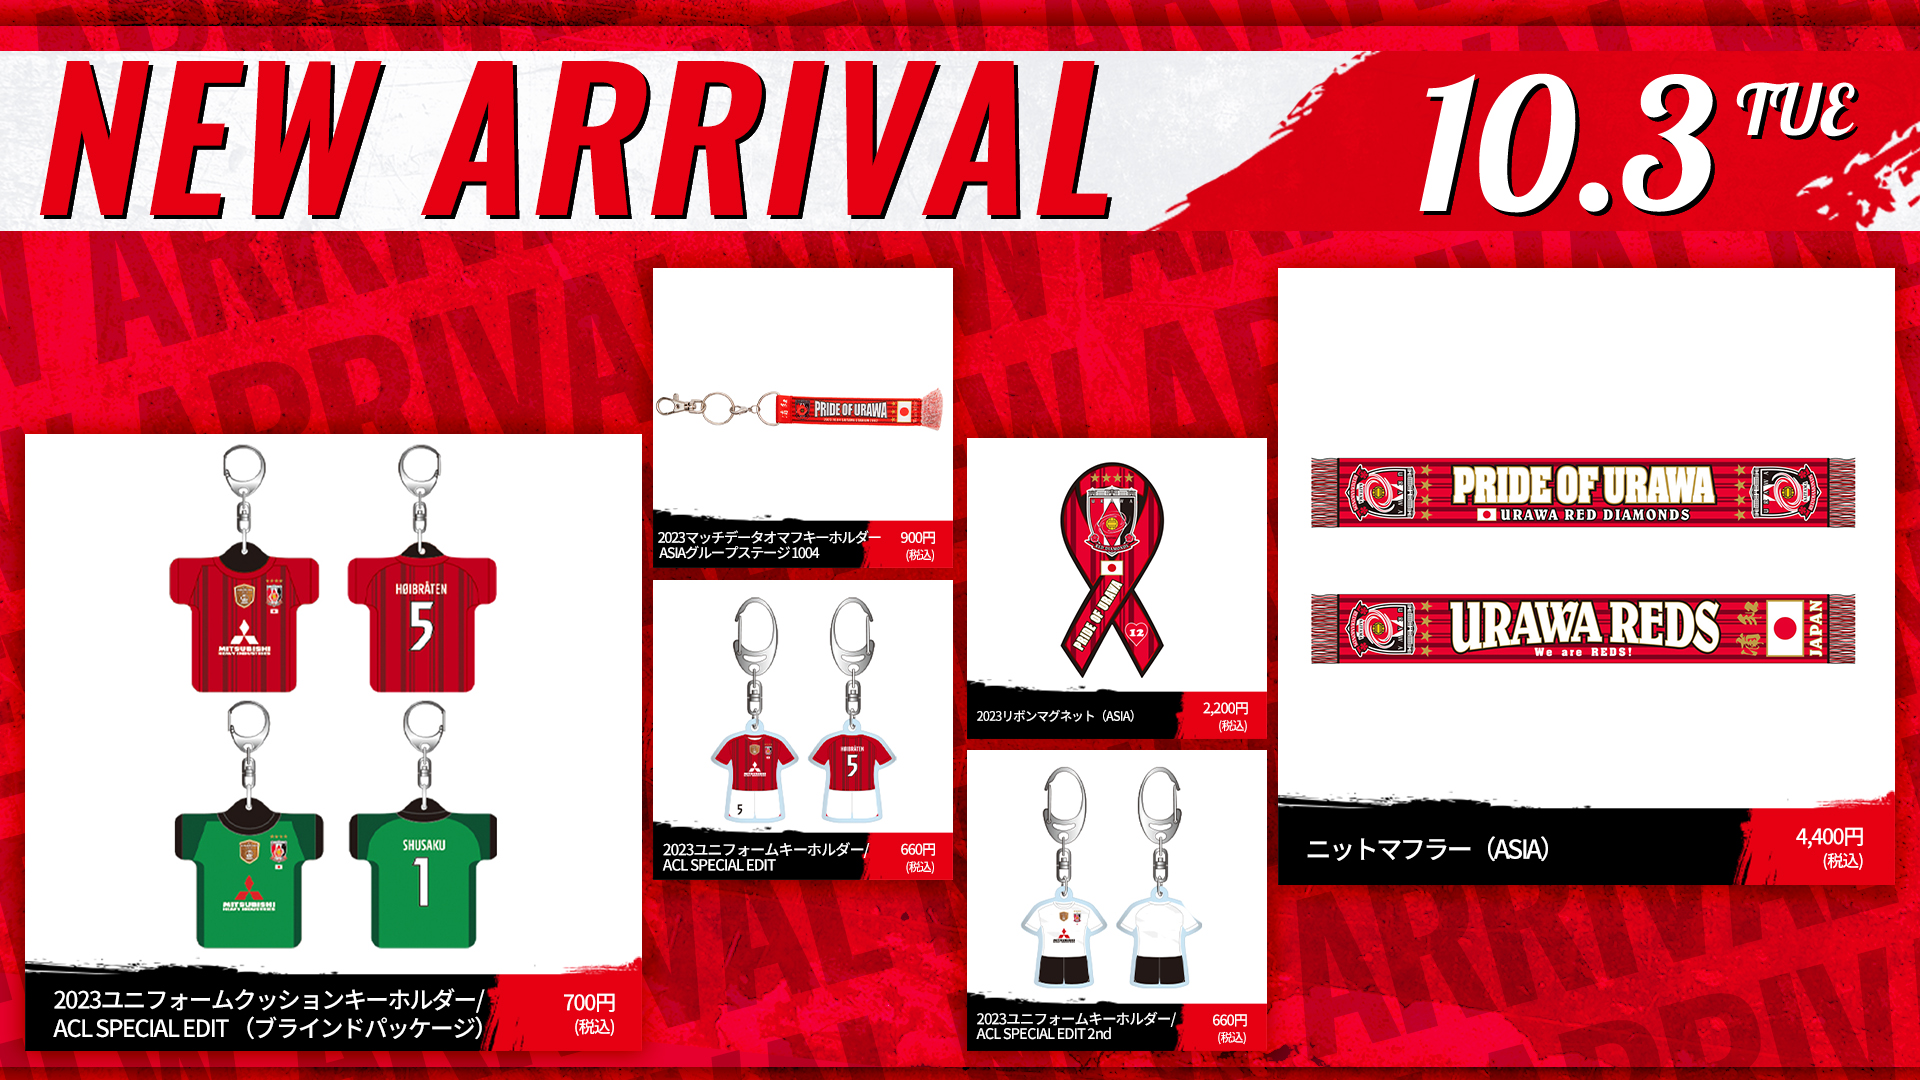 10/3(火)18時から 新商品発売! | URAWA RED DIAMONDS OFFICIAL WEBSITE